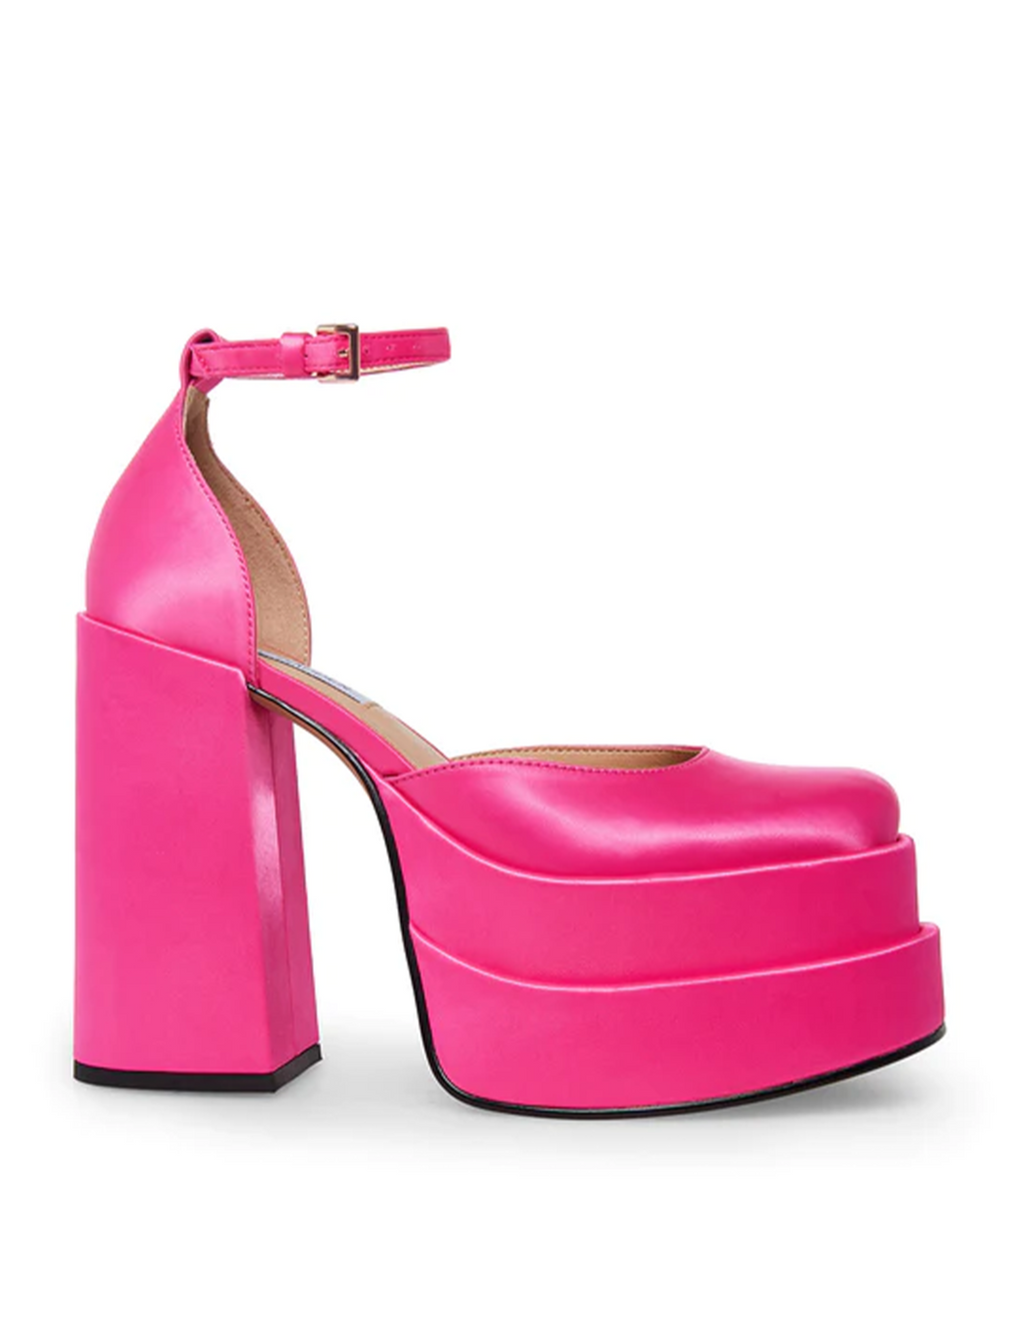 Steve Madden Charlize Satin Platform Heel, Pink